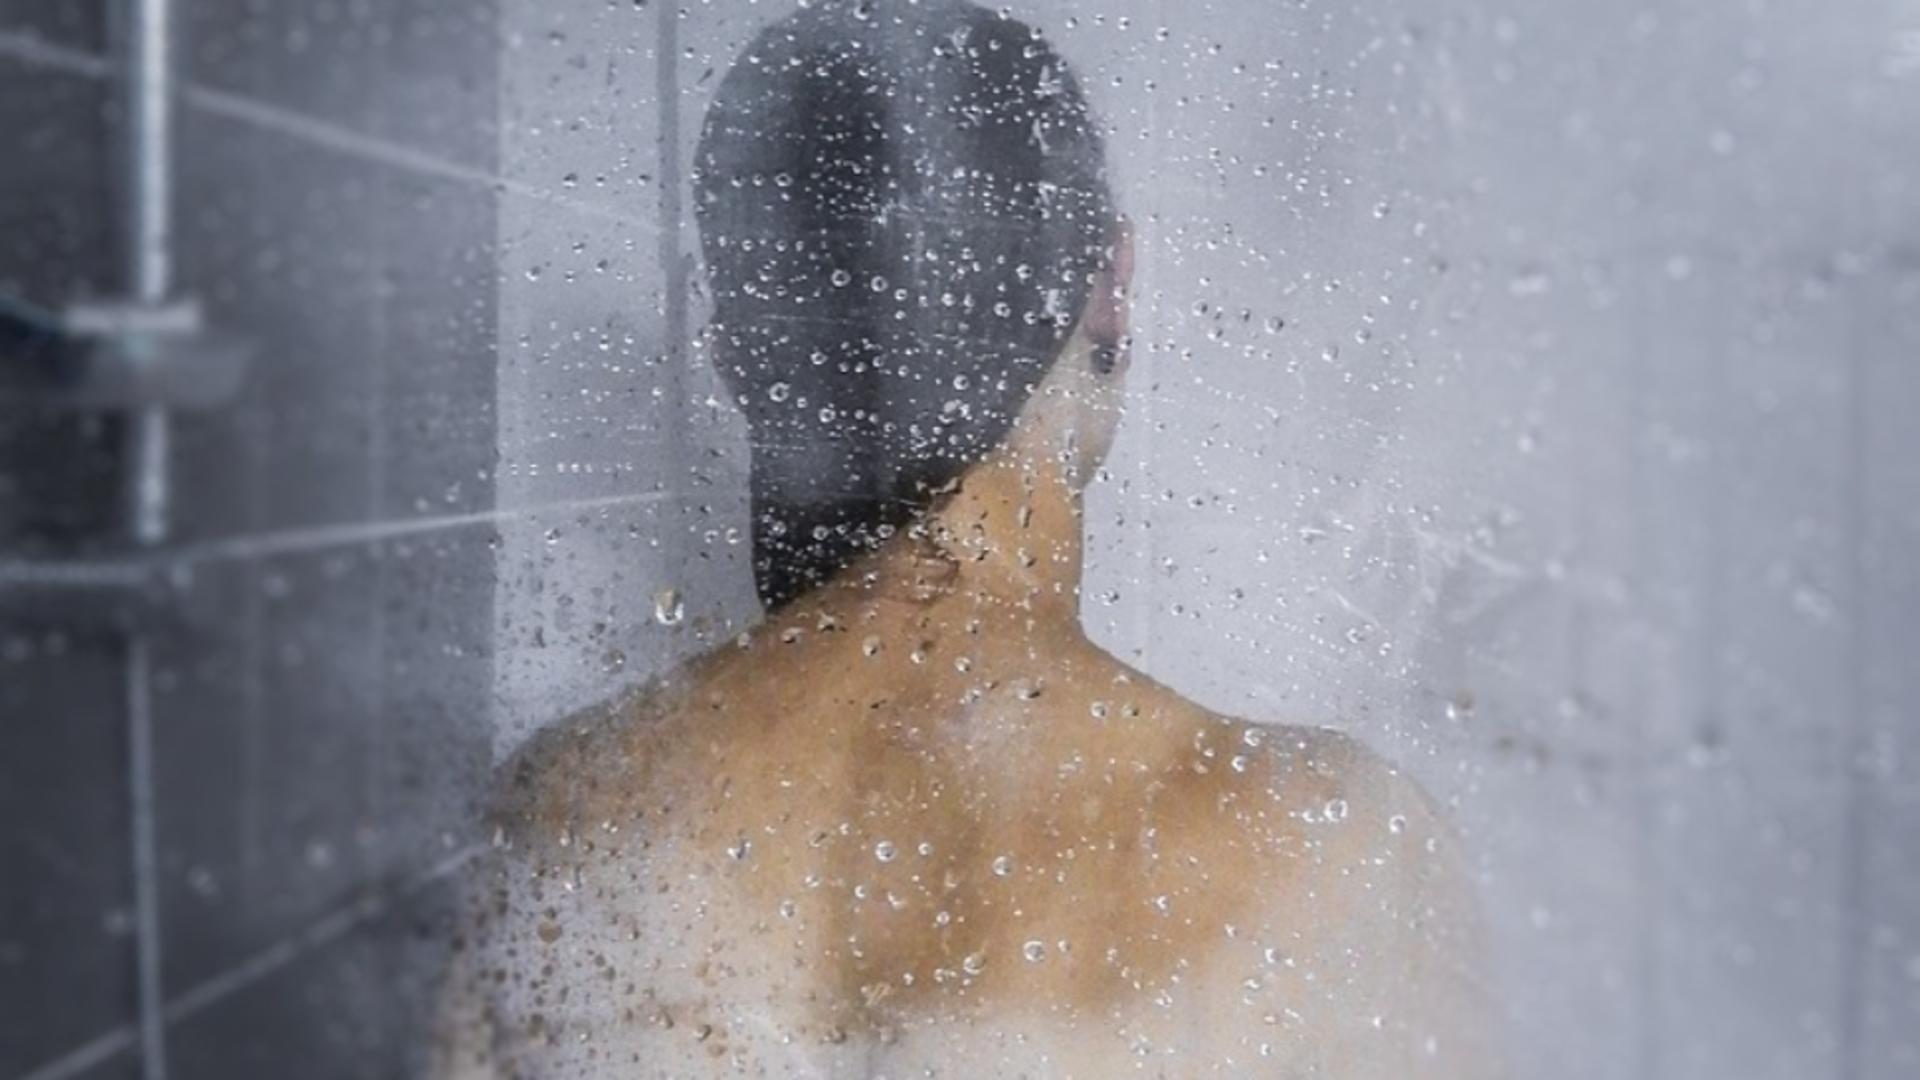 Test: Ce parte a corpului o speli prima când intri sub duș? Răspunsul dezvăluie lucruri ascunse ale personalității tale